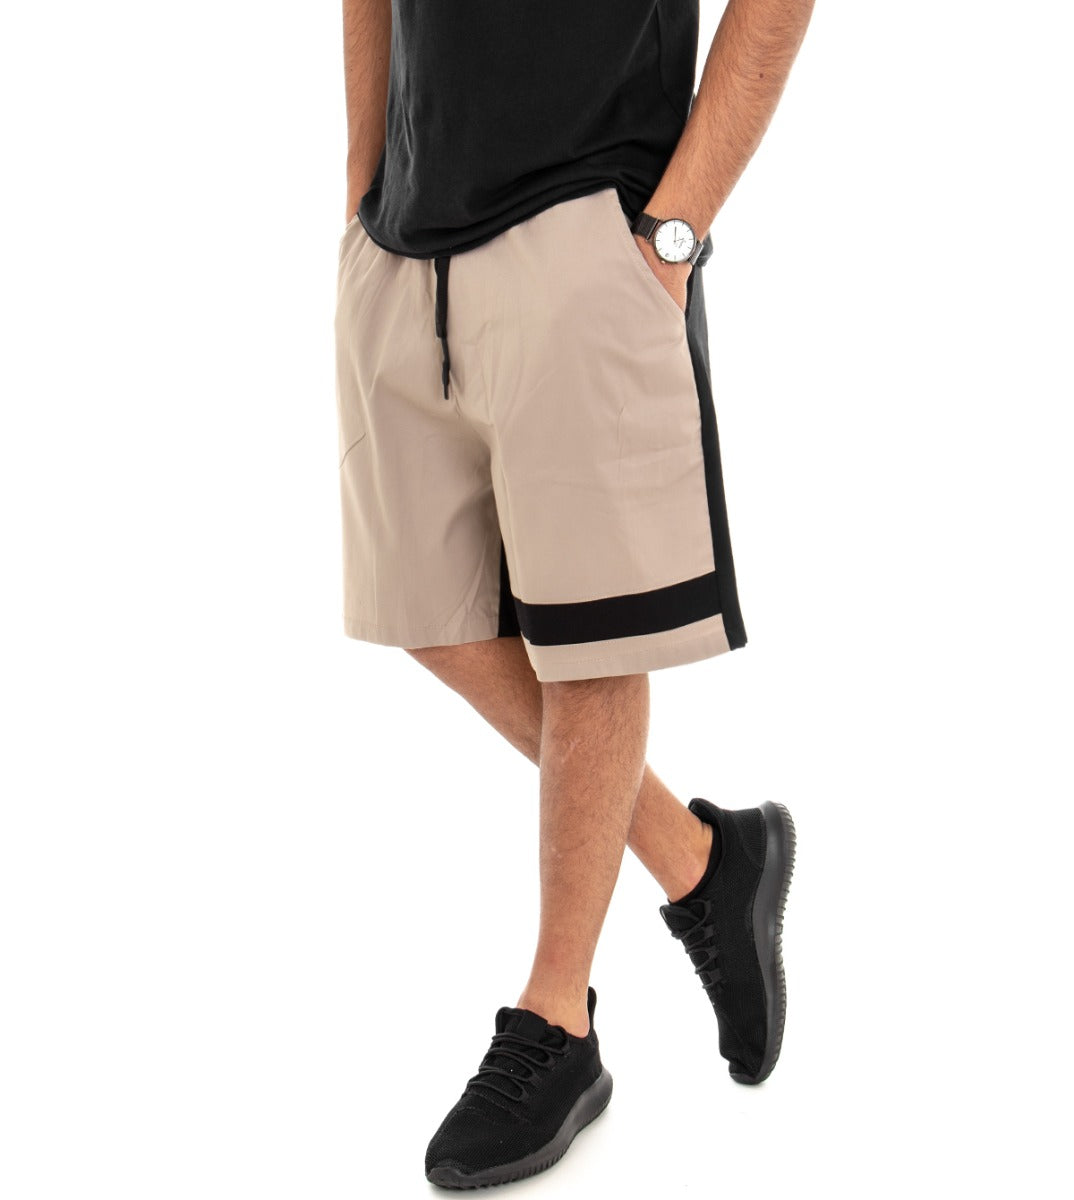 Bermuda Pantaloncino Corto Uomo Tuta Bicolore Beige GIOSAL-PC1376A